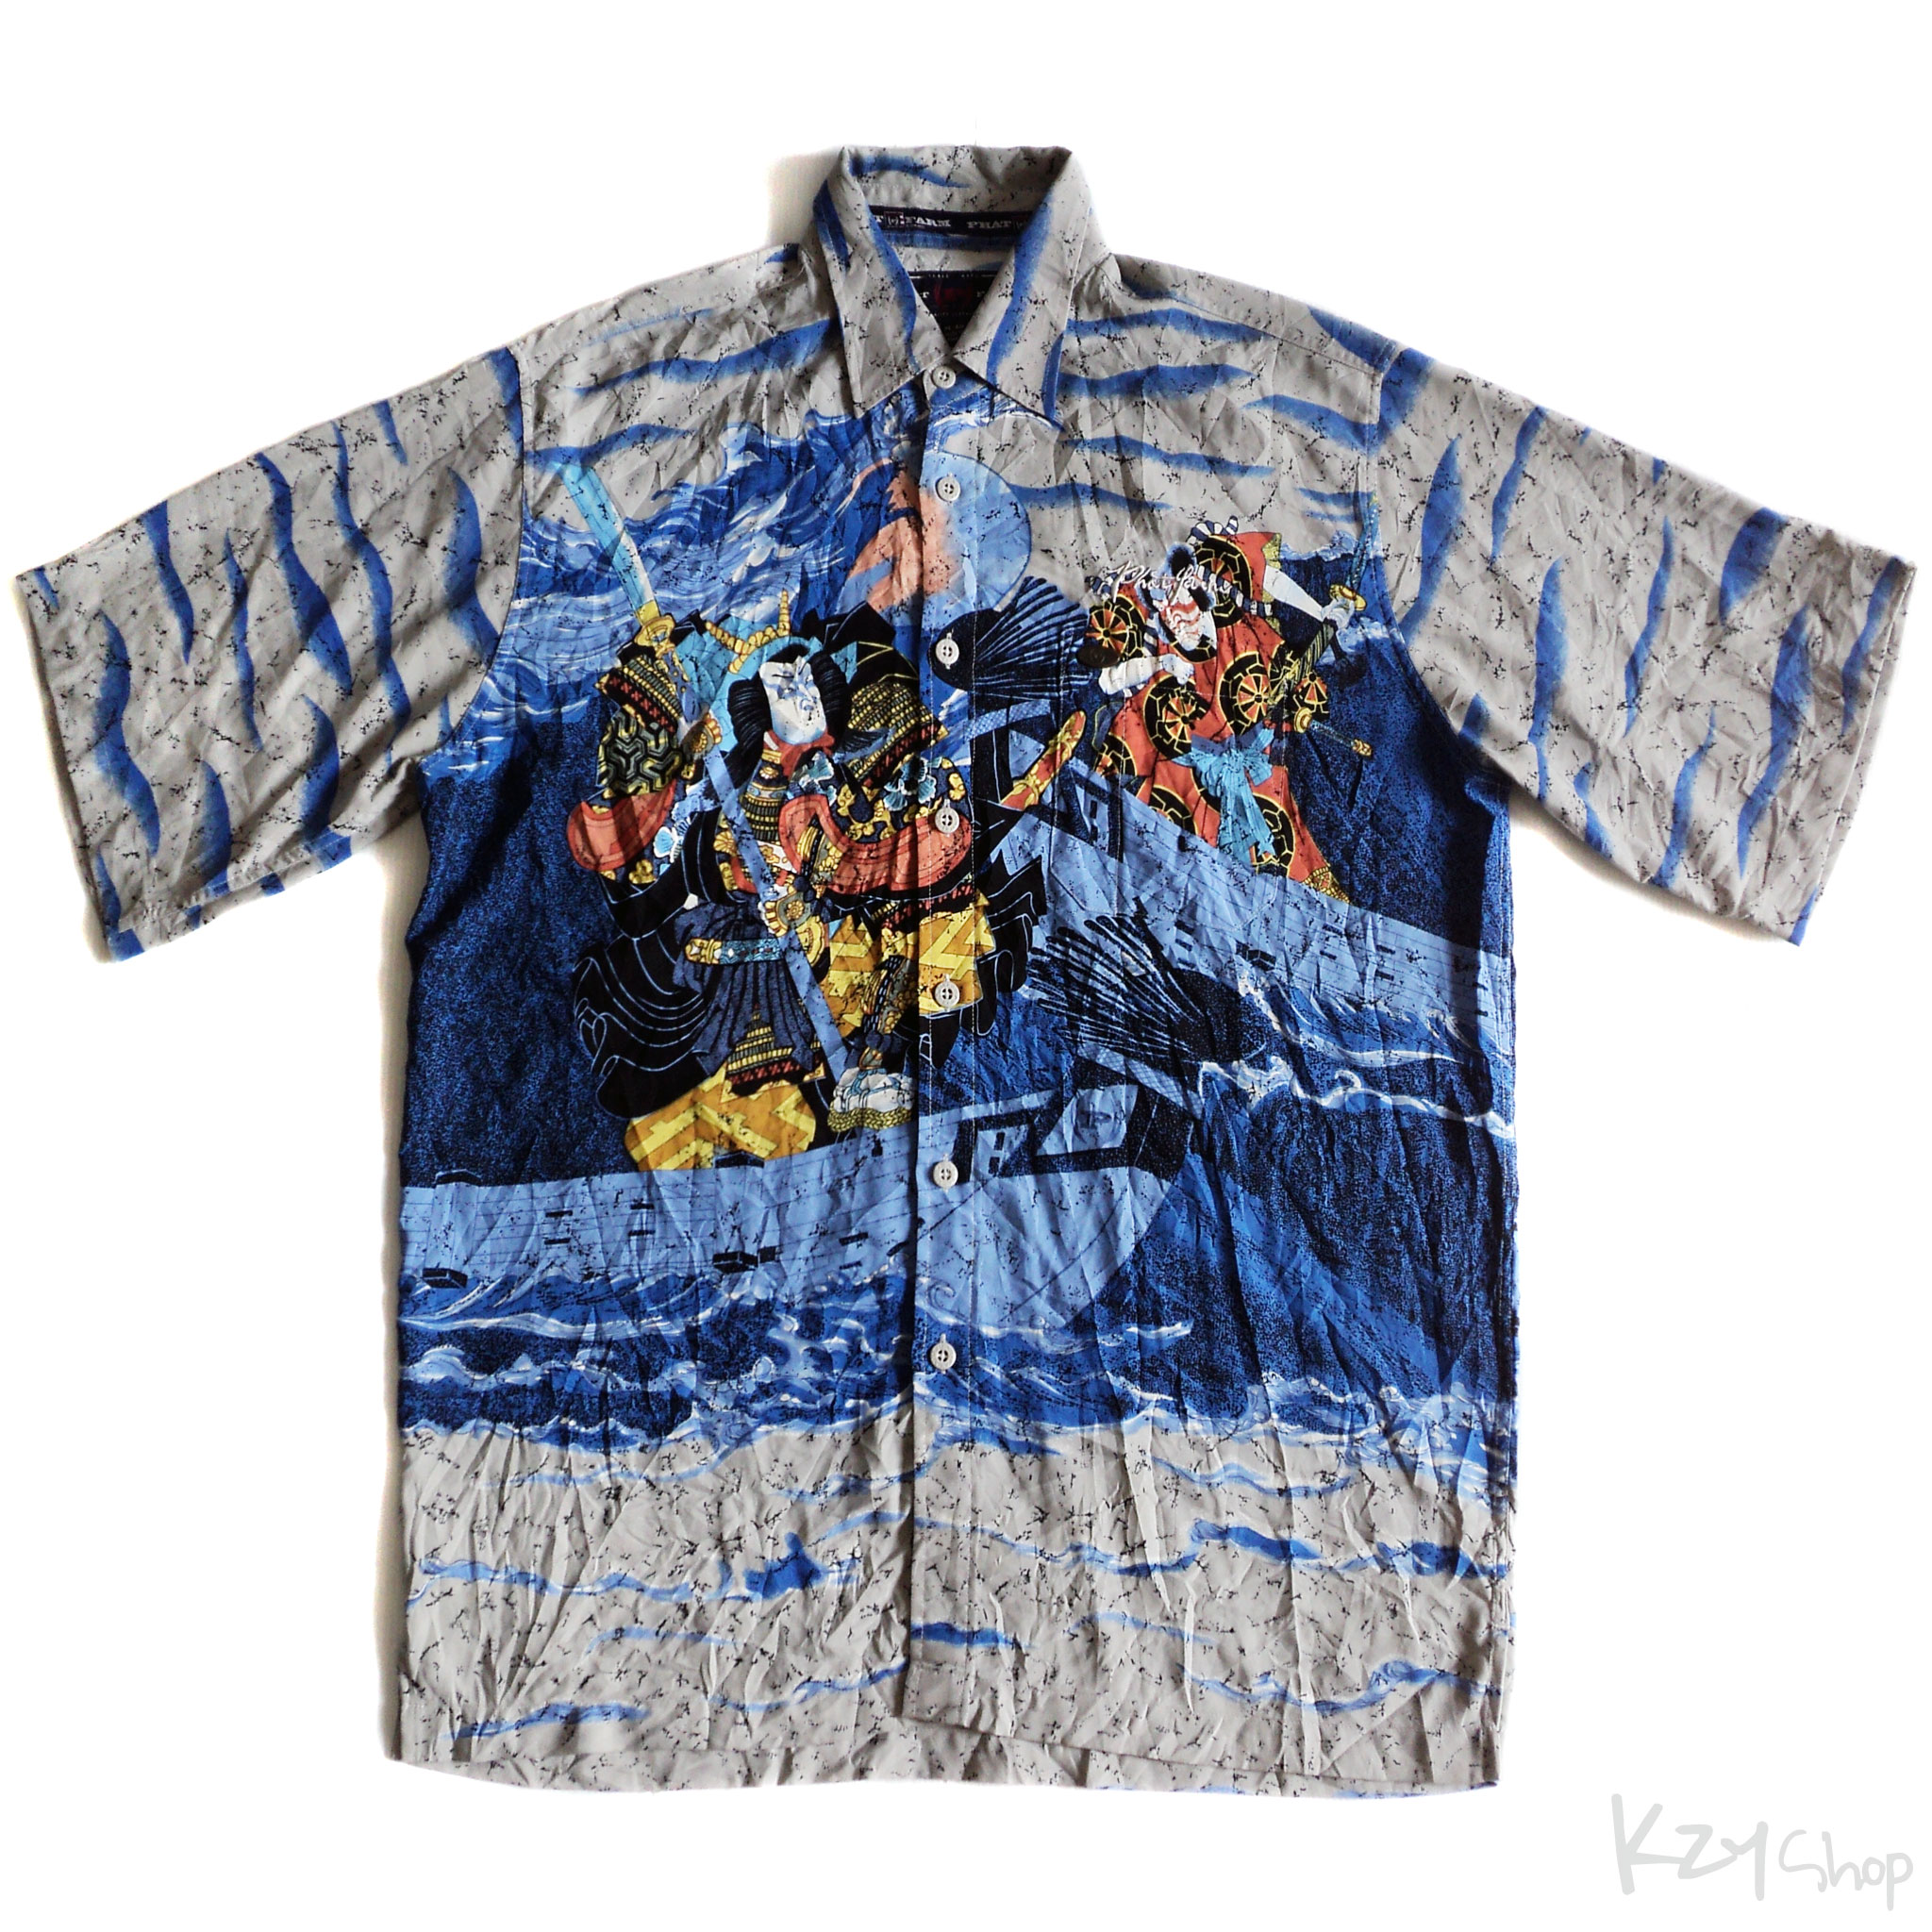 เสื้อฮาวายลายญี่ปุ่น PHAT FARM ลาย นักรบญี่ปุ่น